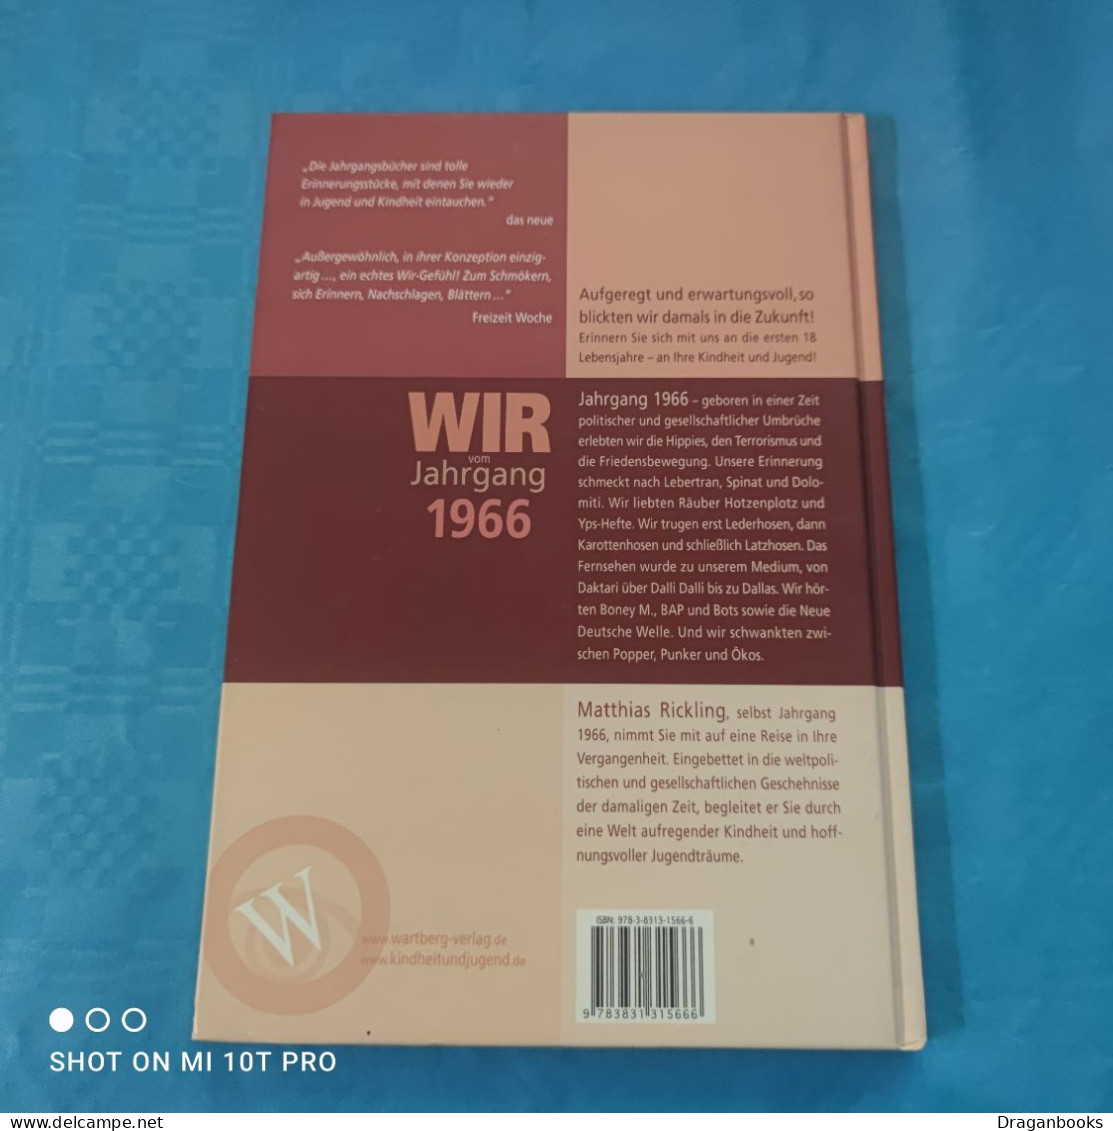 Matthias Rickling - Wir Vom Jahrgang 1966 - Chronicles & Annuals